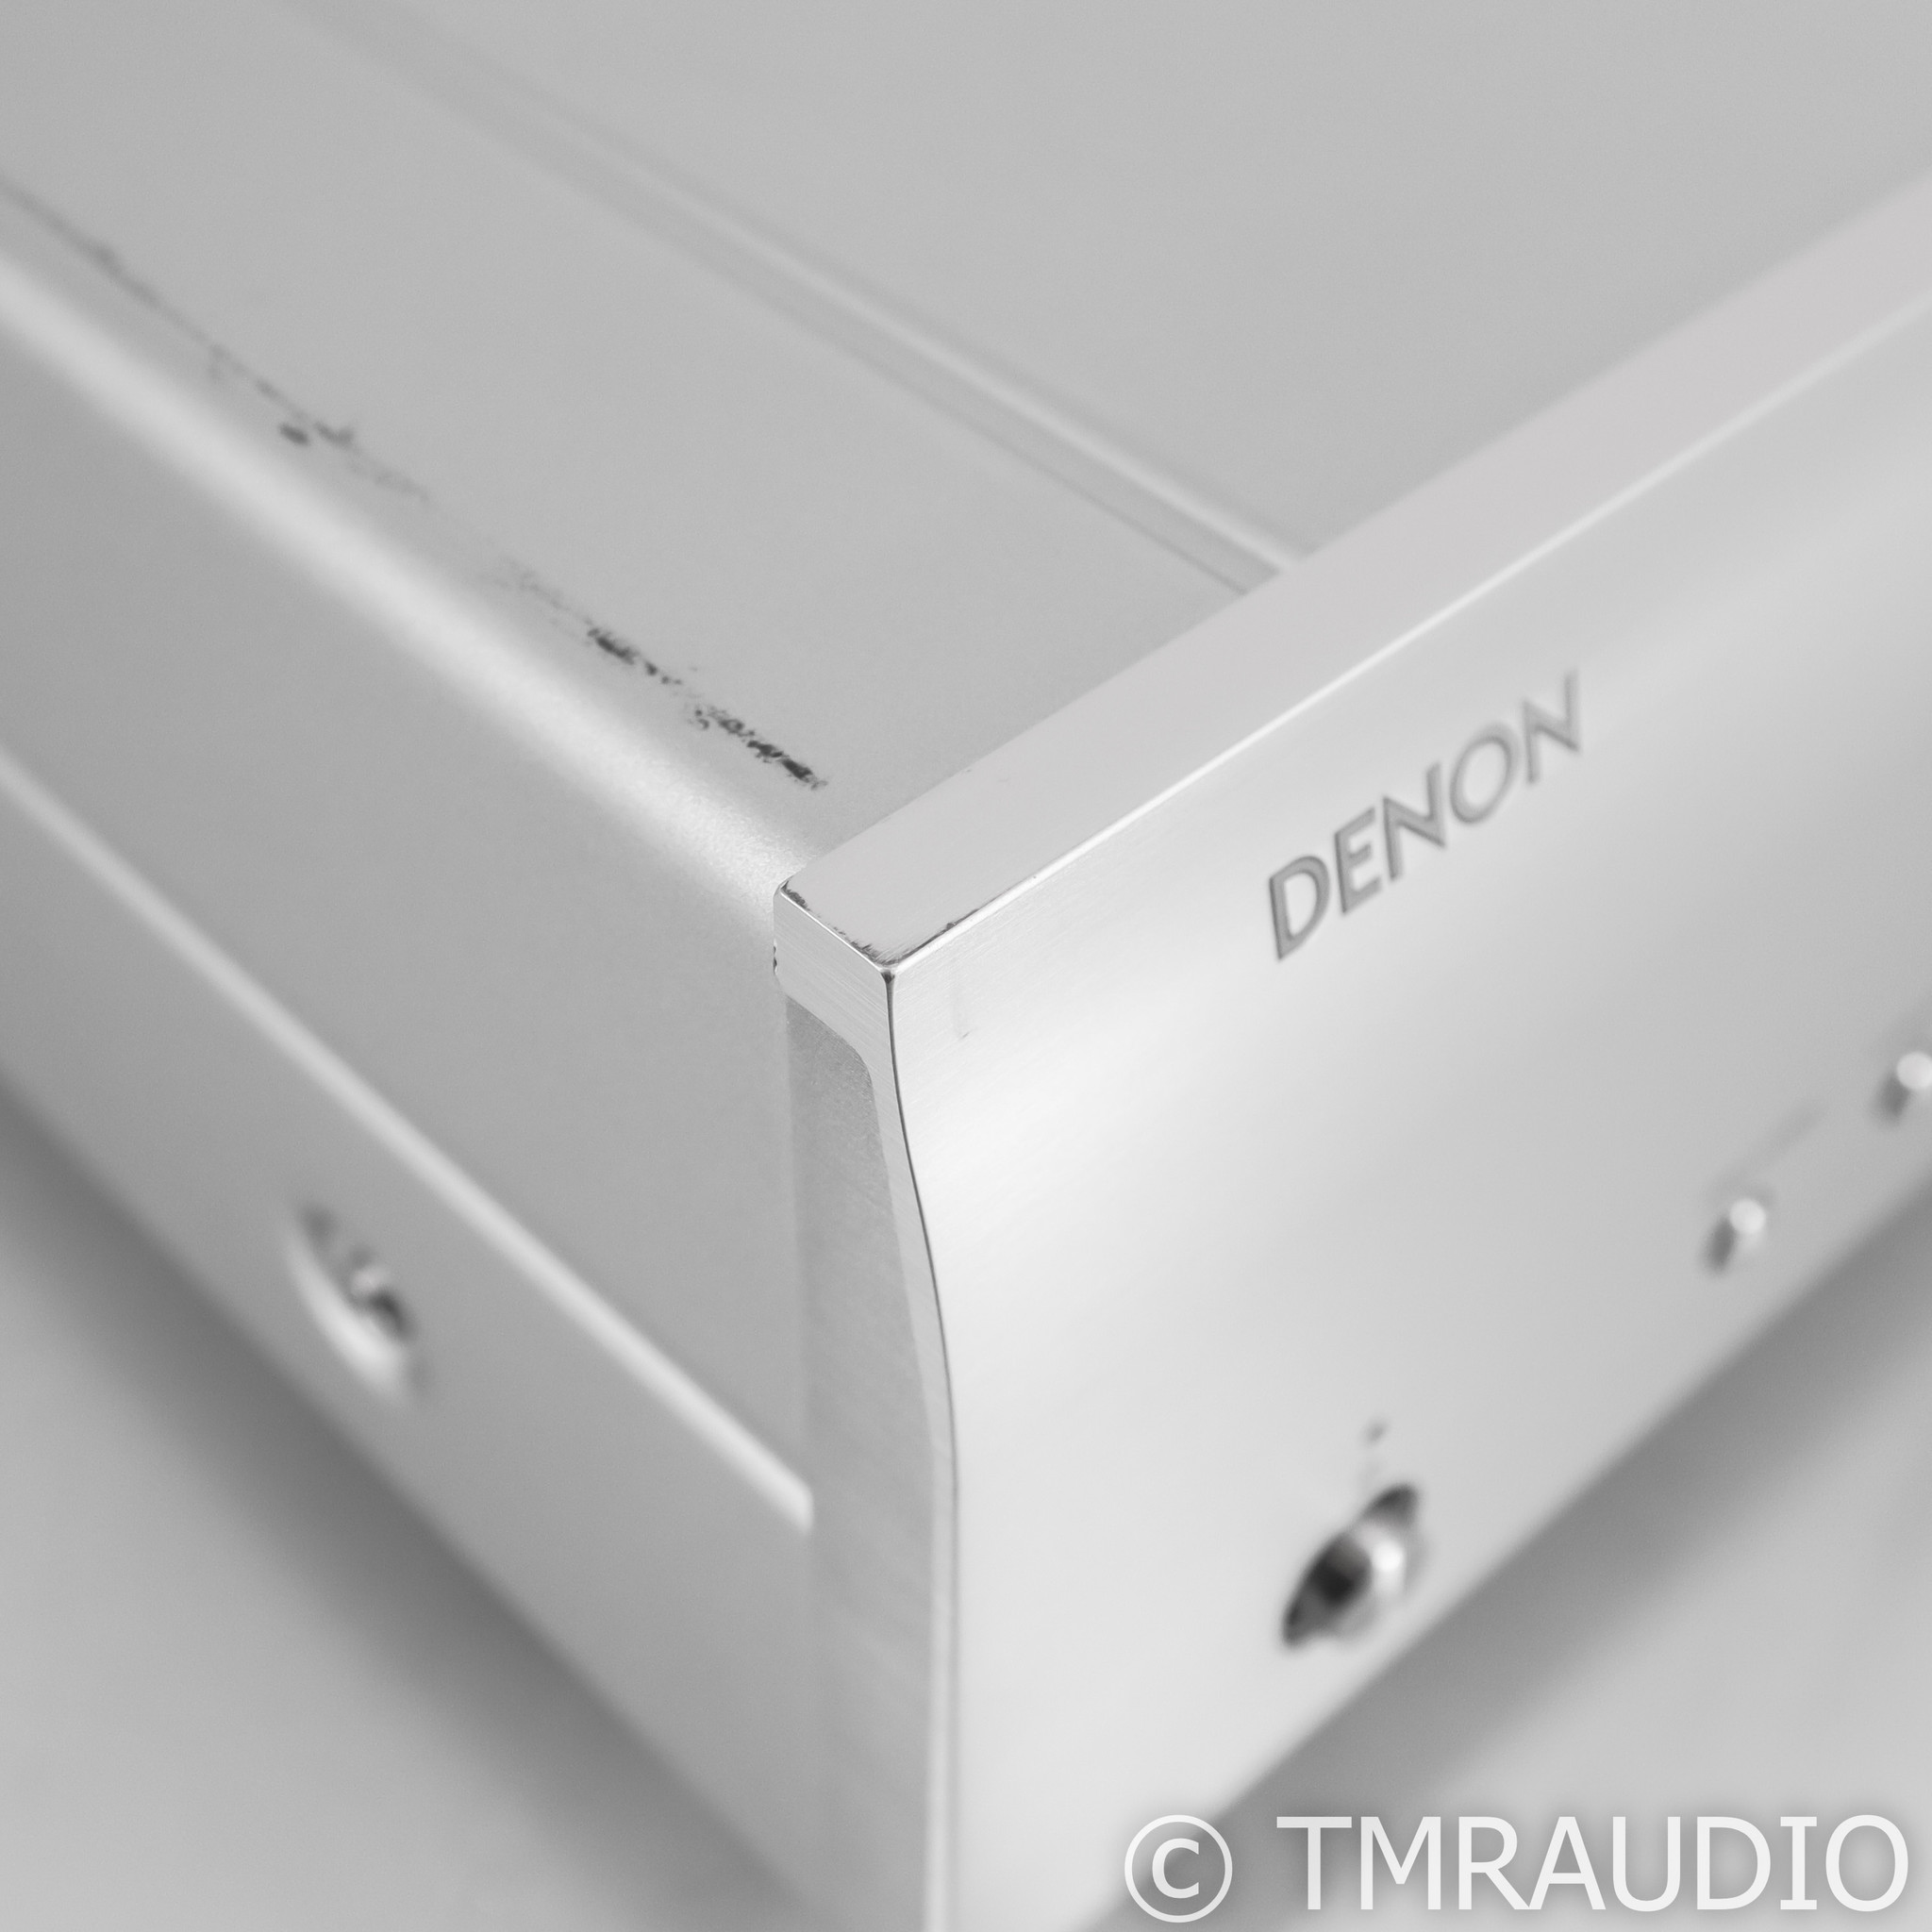 Denon DCD-1700NE CD / Player; - Music SACD Room The DCD1700